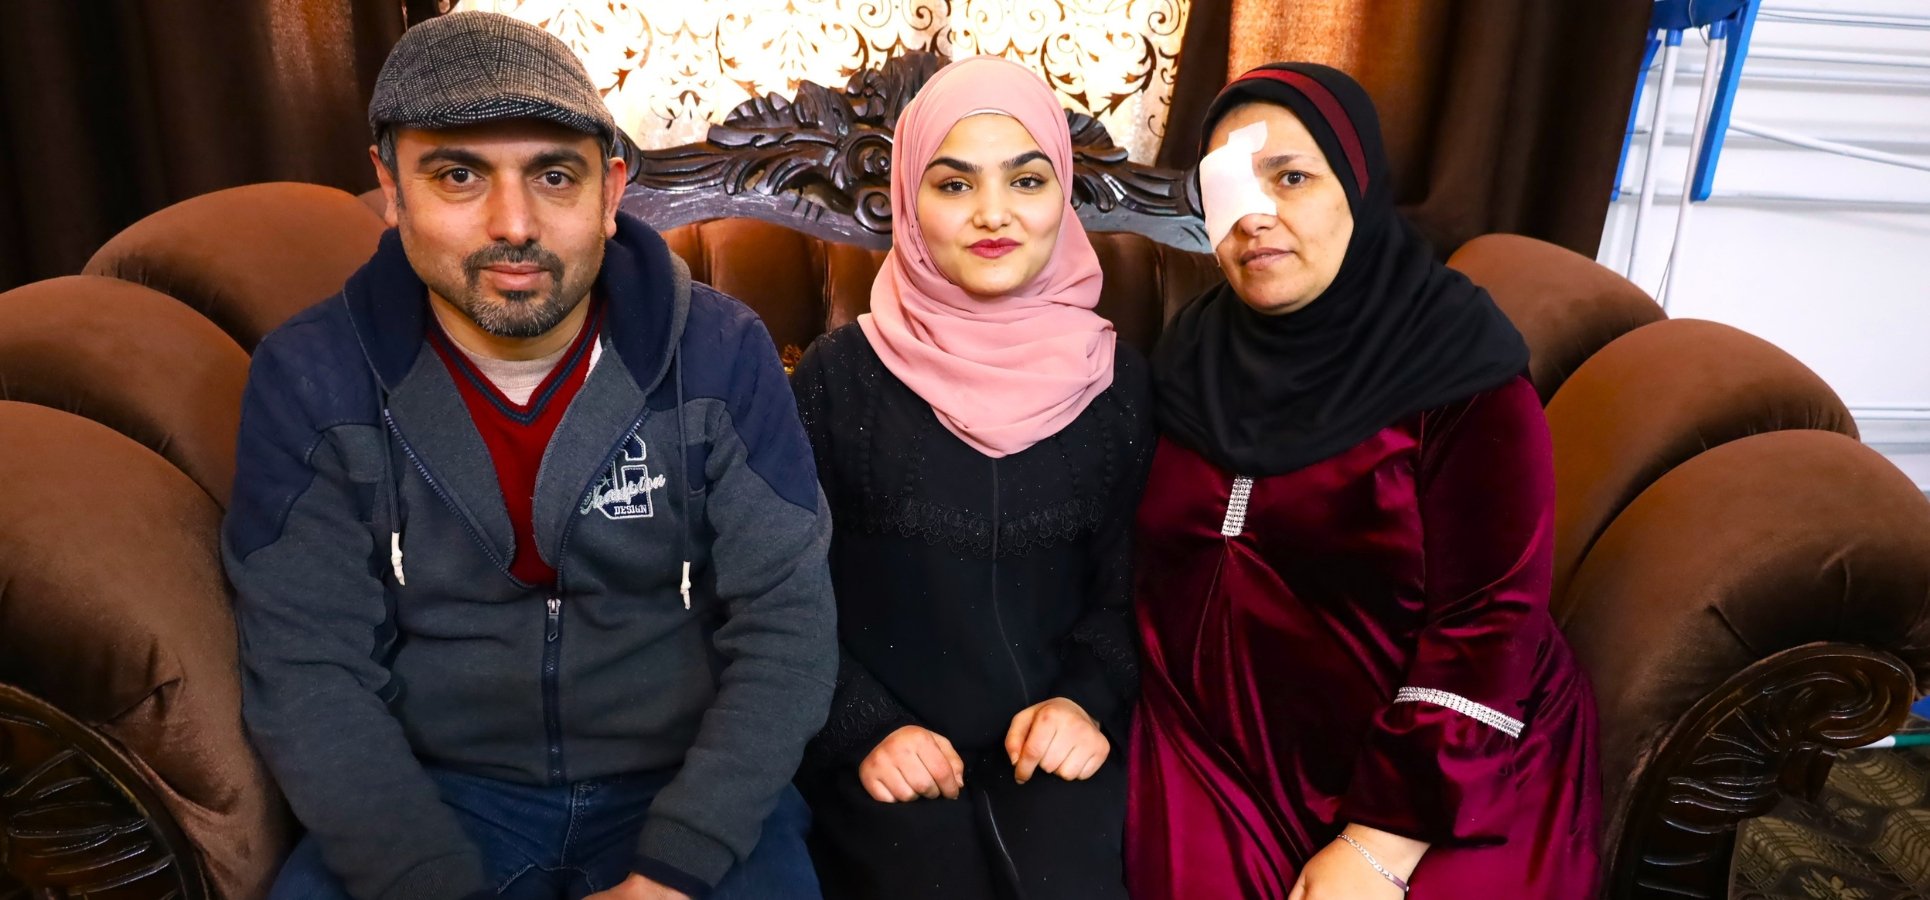 Mariam sitzt zwischen ihren Beiden Eltern auf einem Sofa. Sie hat eine Prothese, ihre Mutter ist an einem Auge verletzt und trägt ein Pflaster.